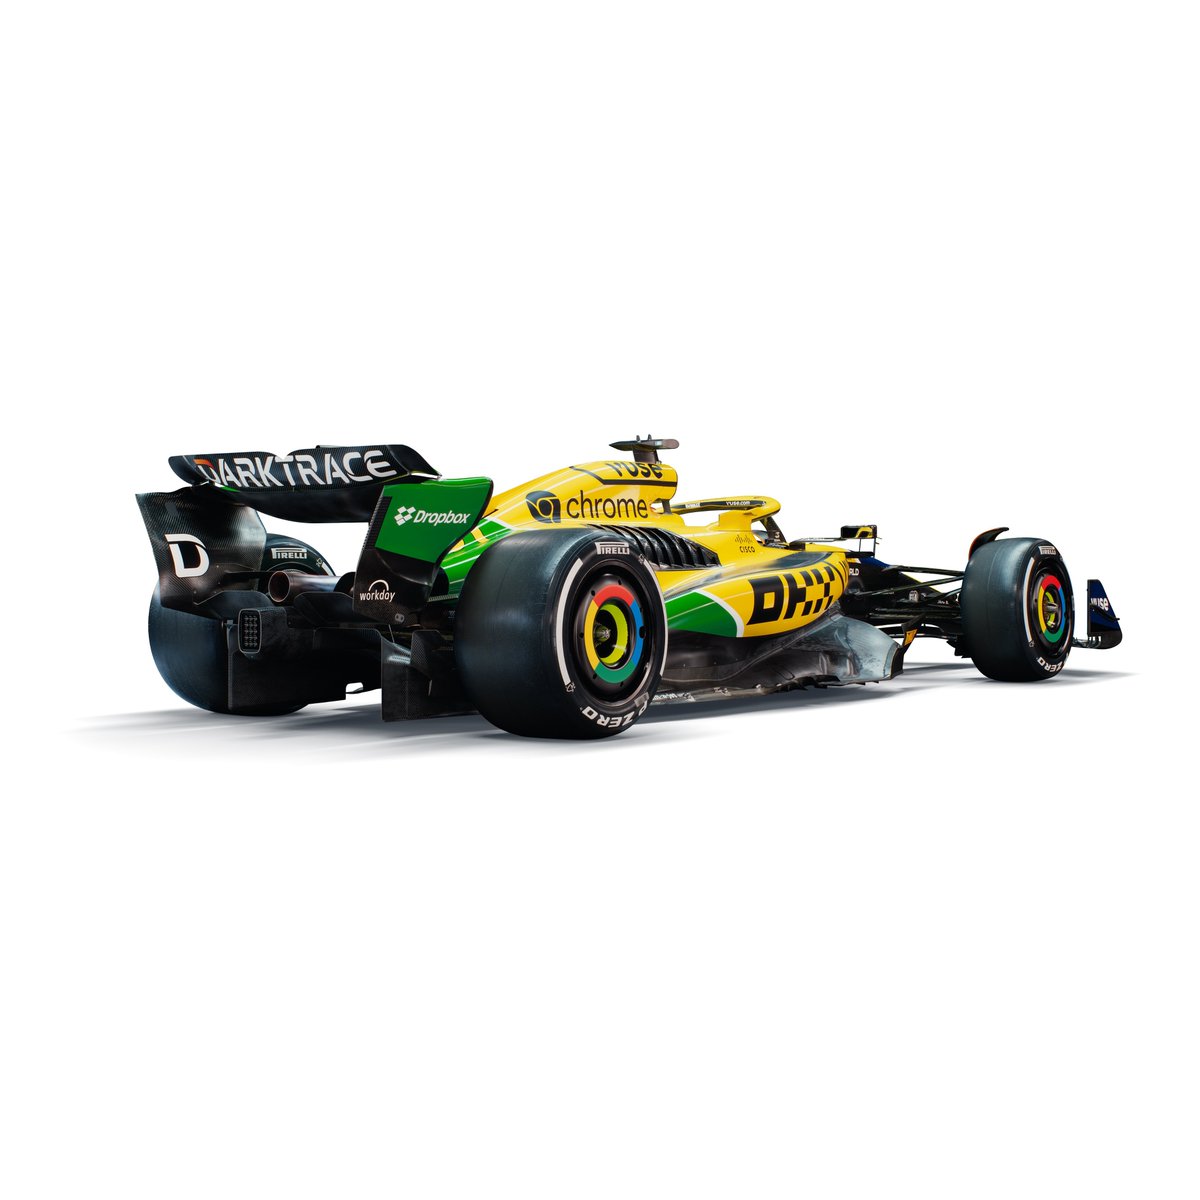 🚨 OFFICIEL ! McLaren dévoile une livrée spéciale pour le #MonacoGP en hommage à Ayrton Senna ! 💛💚 #F1